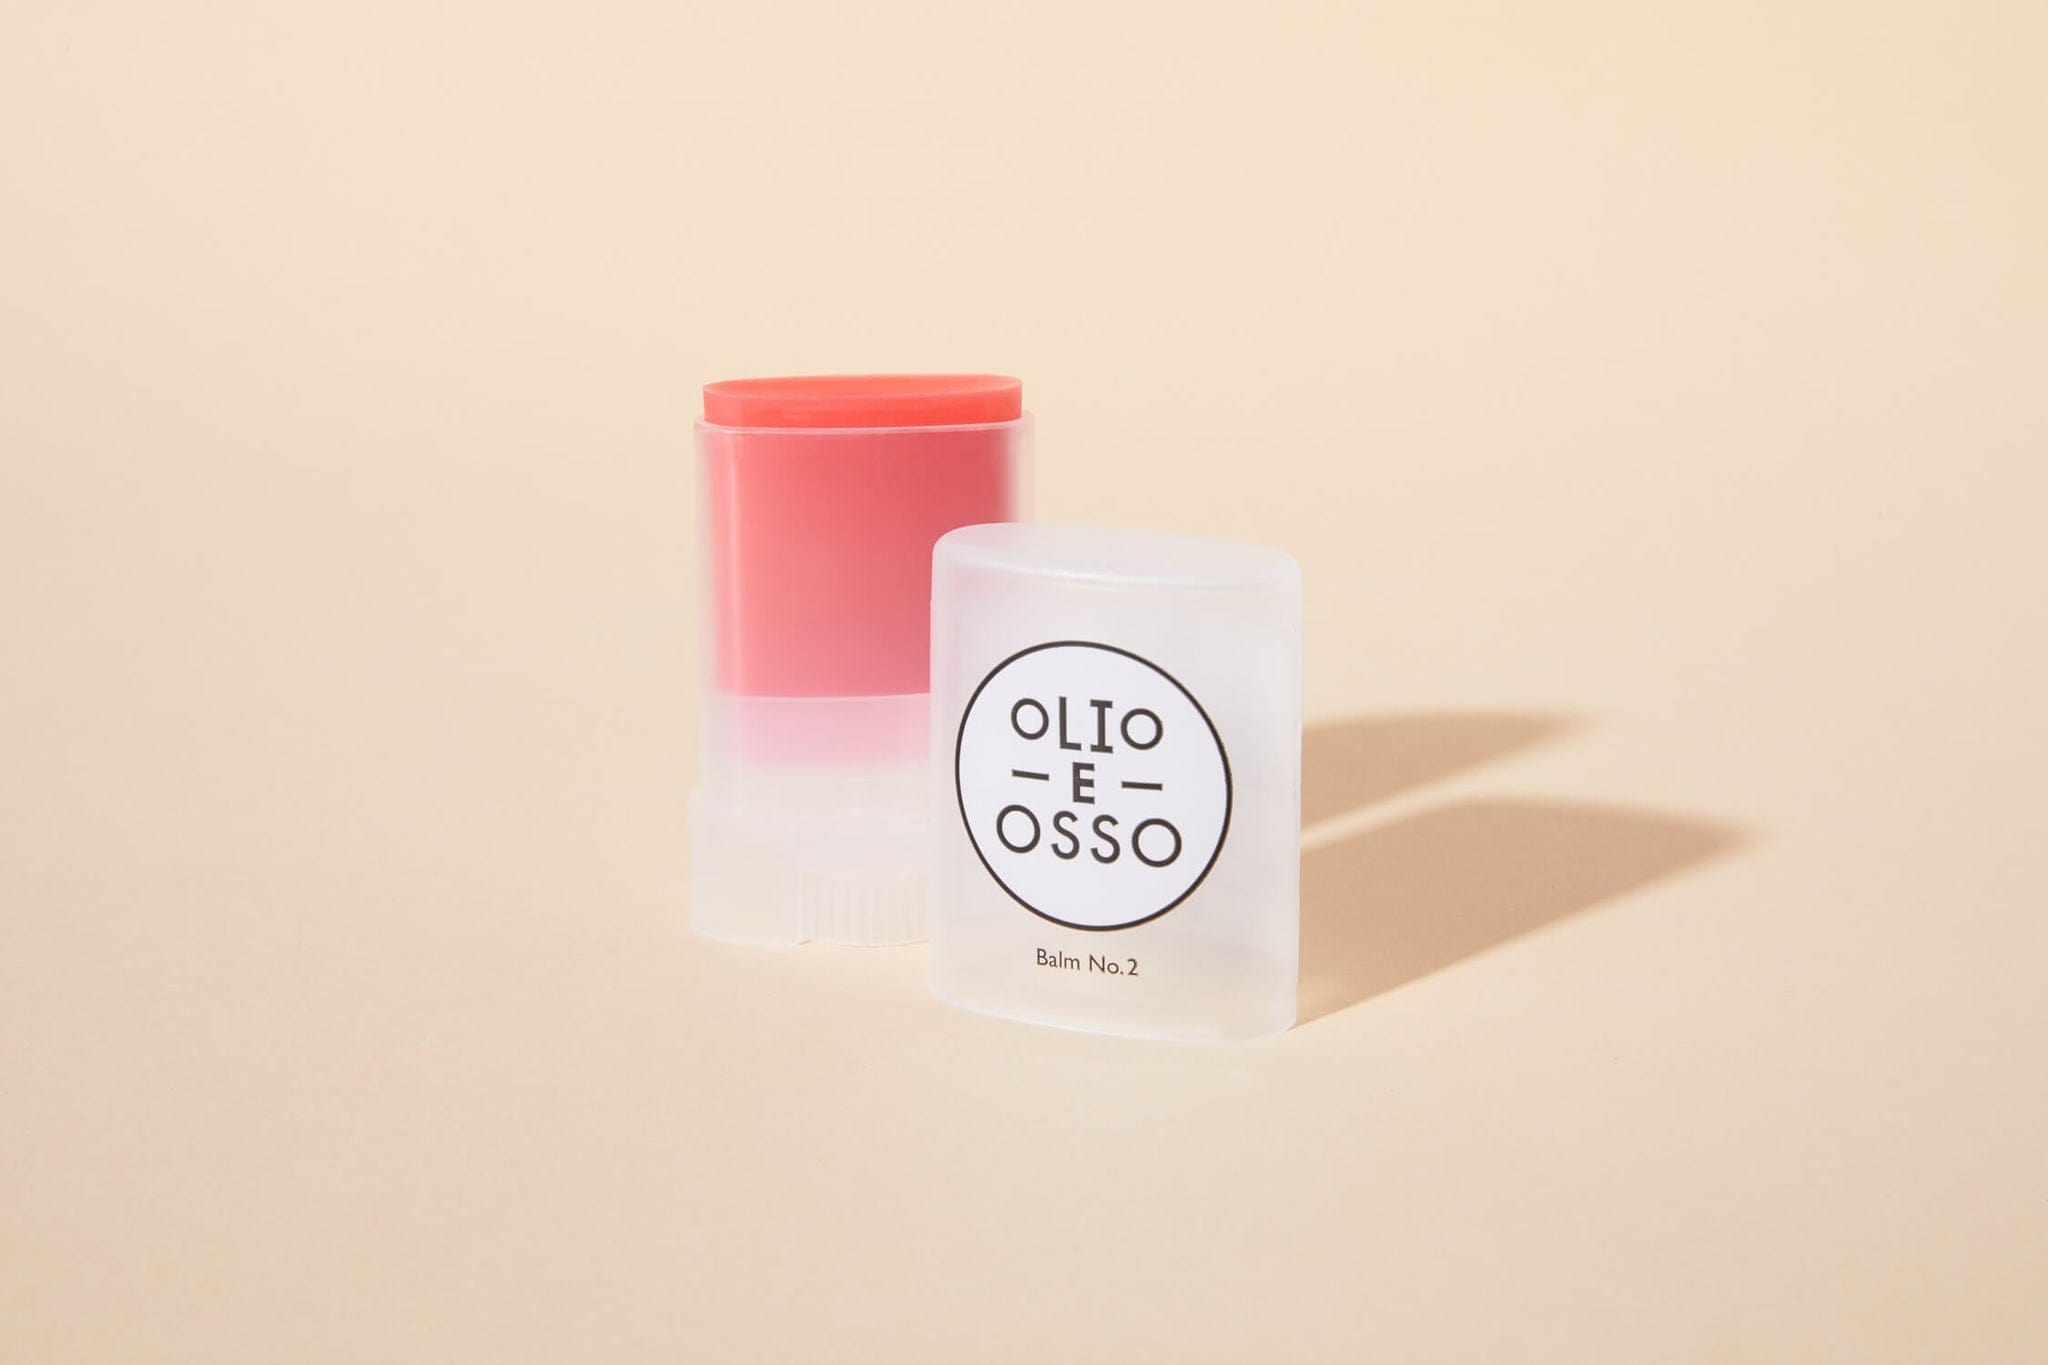 Olio e Osso multi stick Balm Stick - Lip + Cheek Colour sunja link - canada